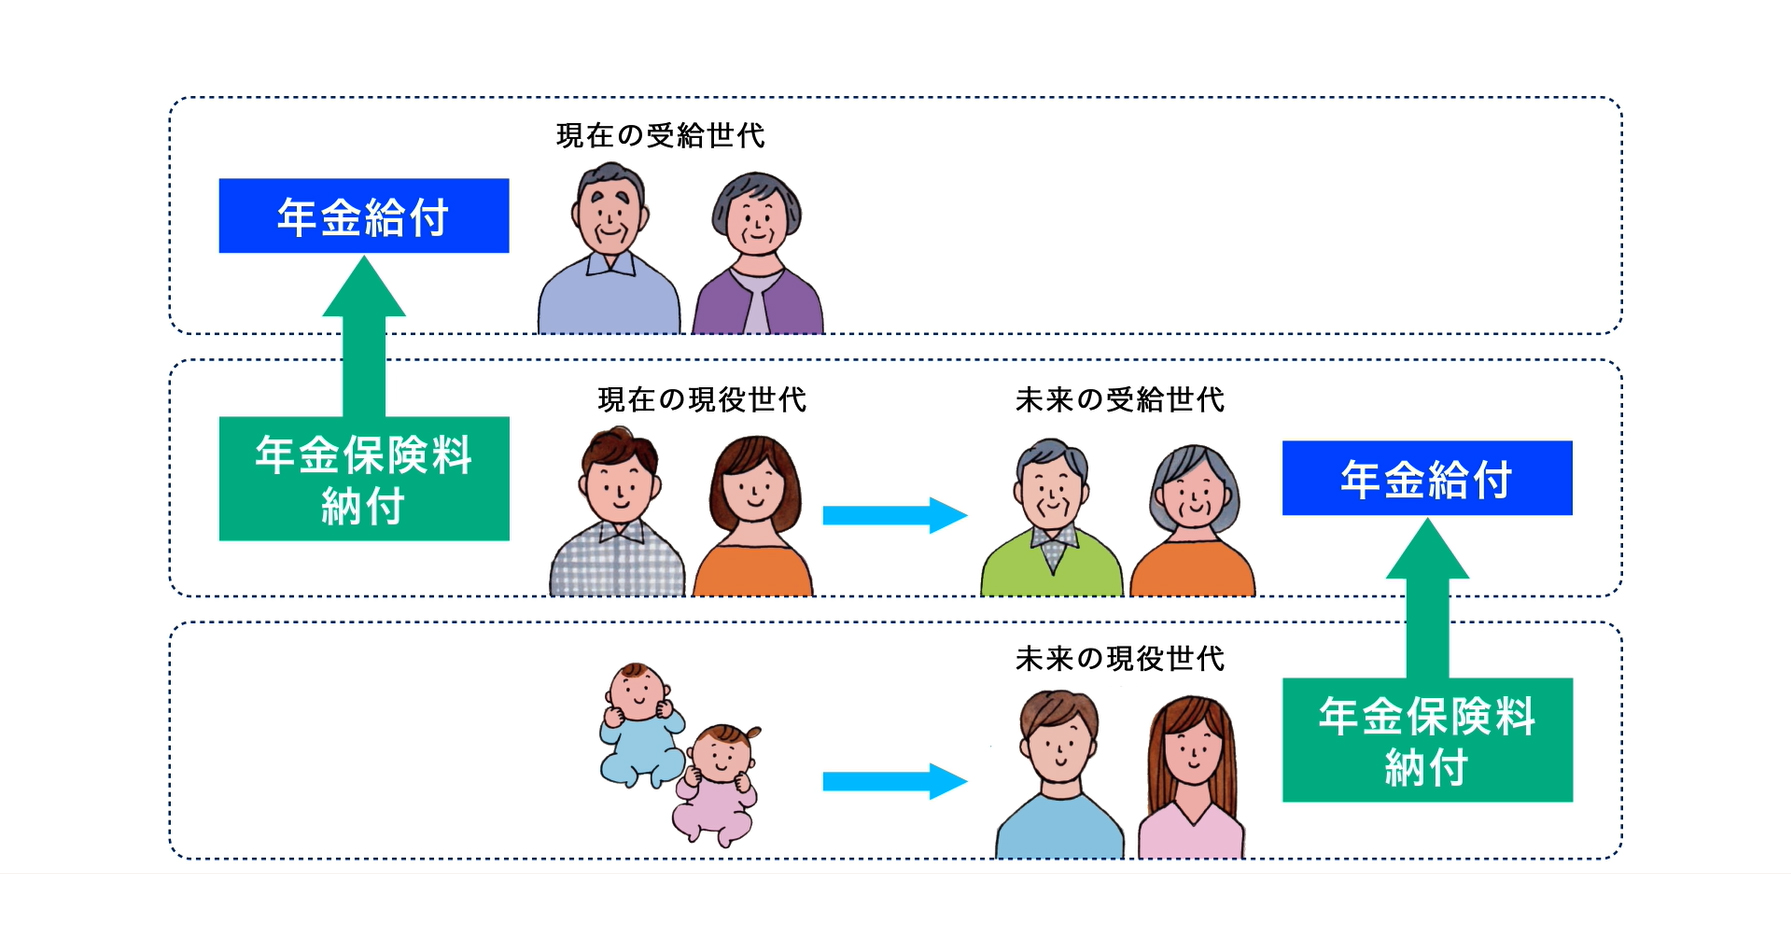 日本の公的年金制度＝世代間の支え合いの仕組み